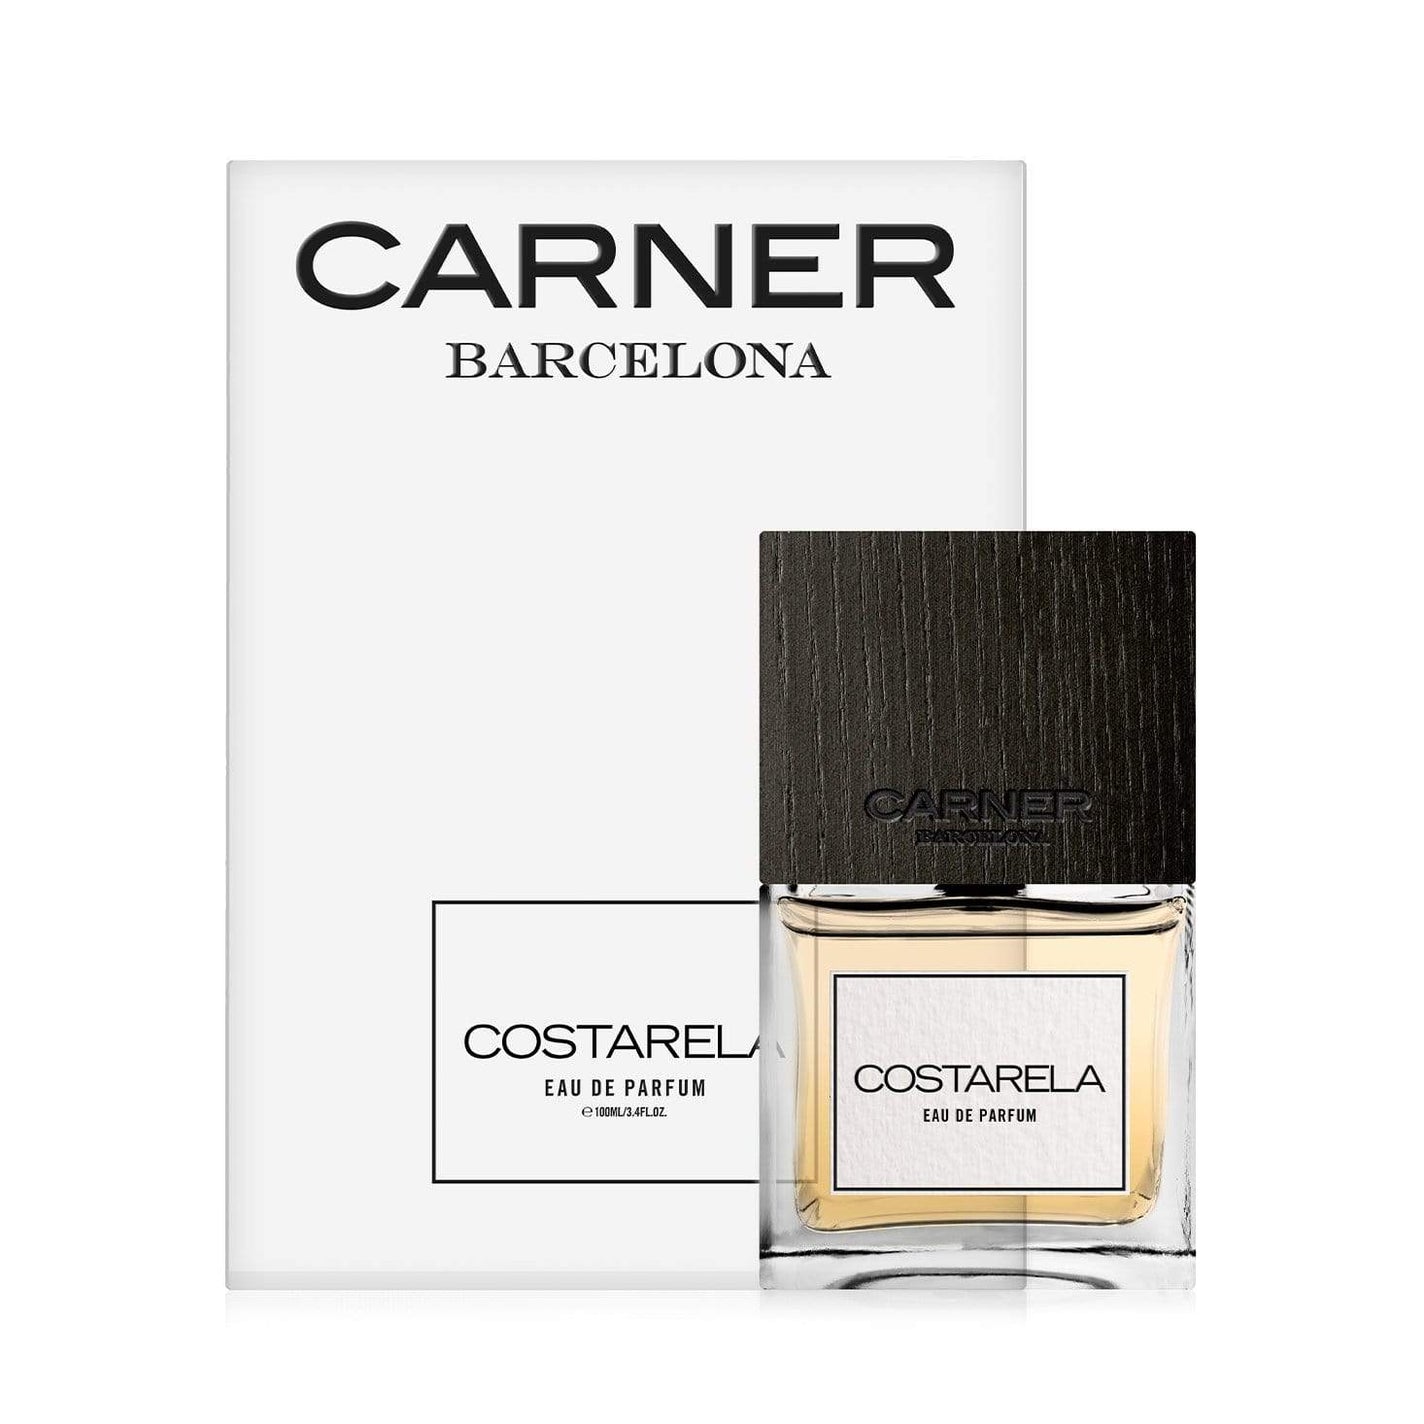 CARNER BARCELONA Costarela Eau de Parfum - 100ml